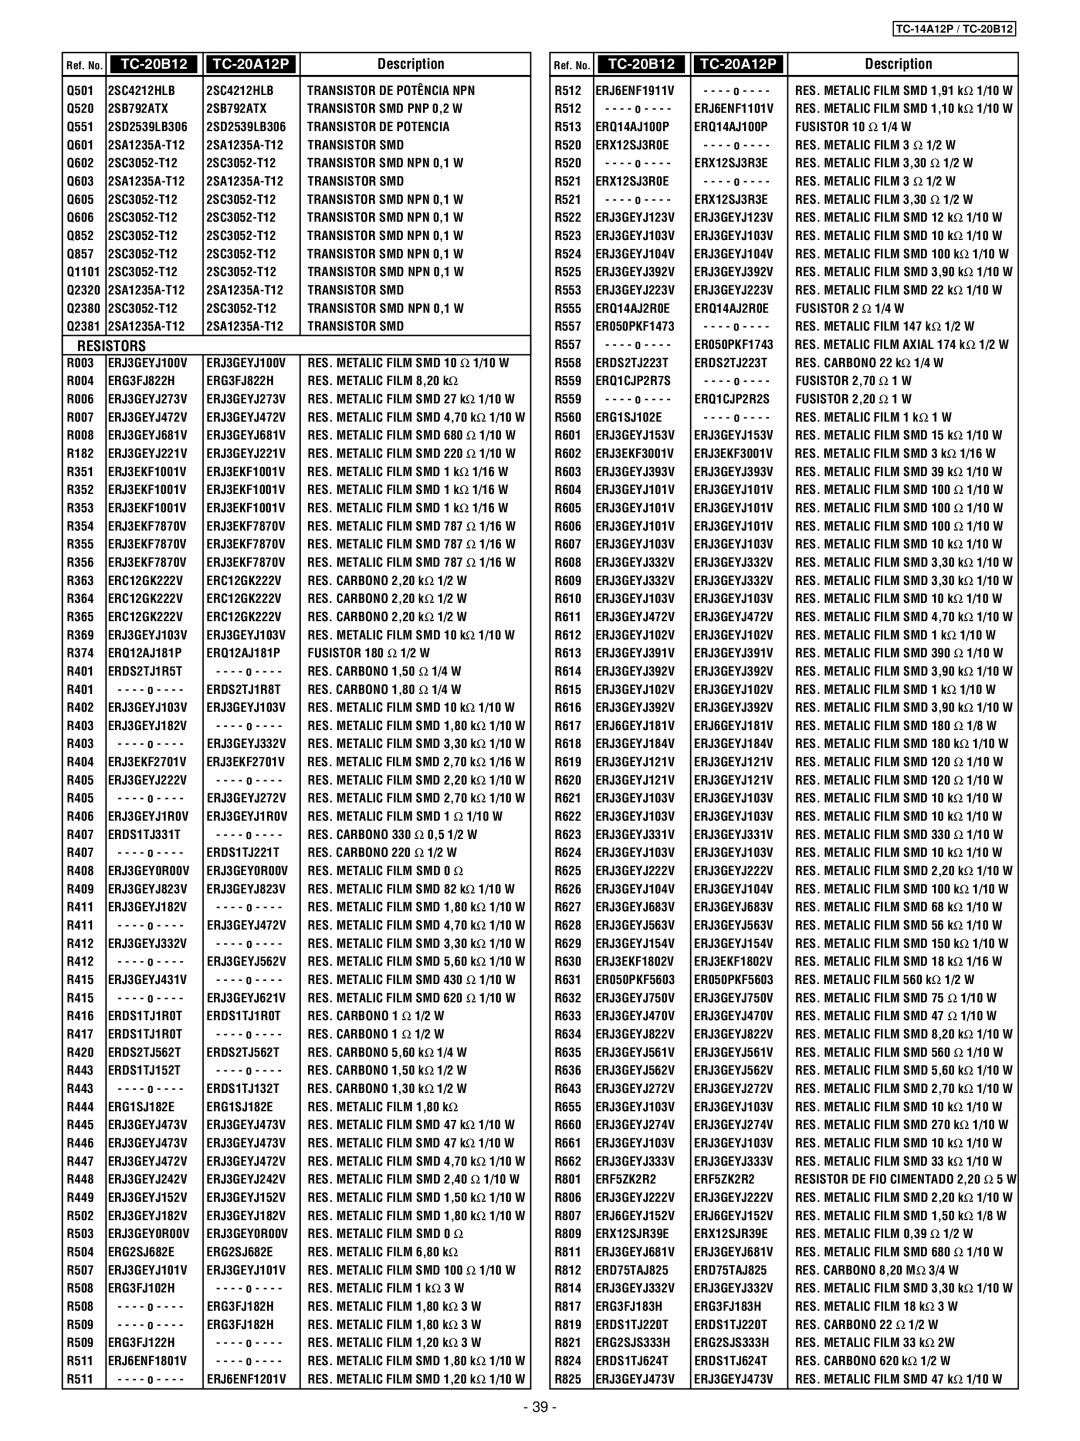 Panasonic TC-14A12P service manual TC-20B12, TC-20A12P, Description, Resistors 